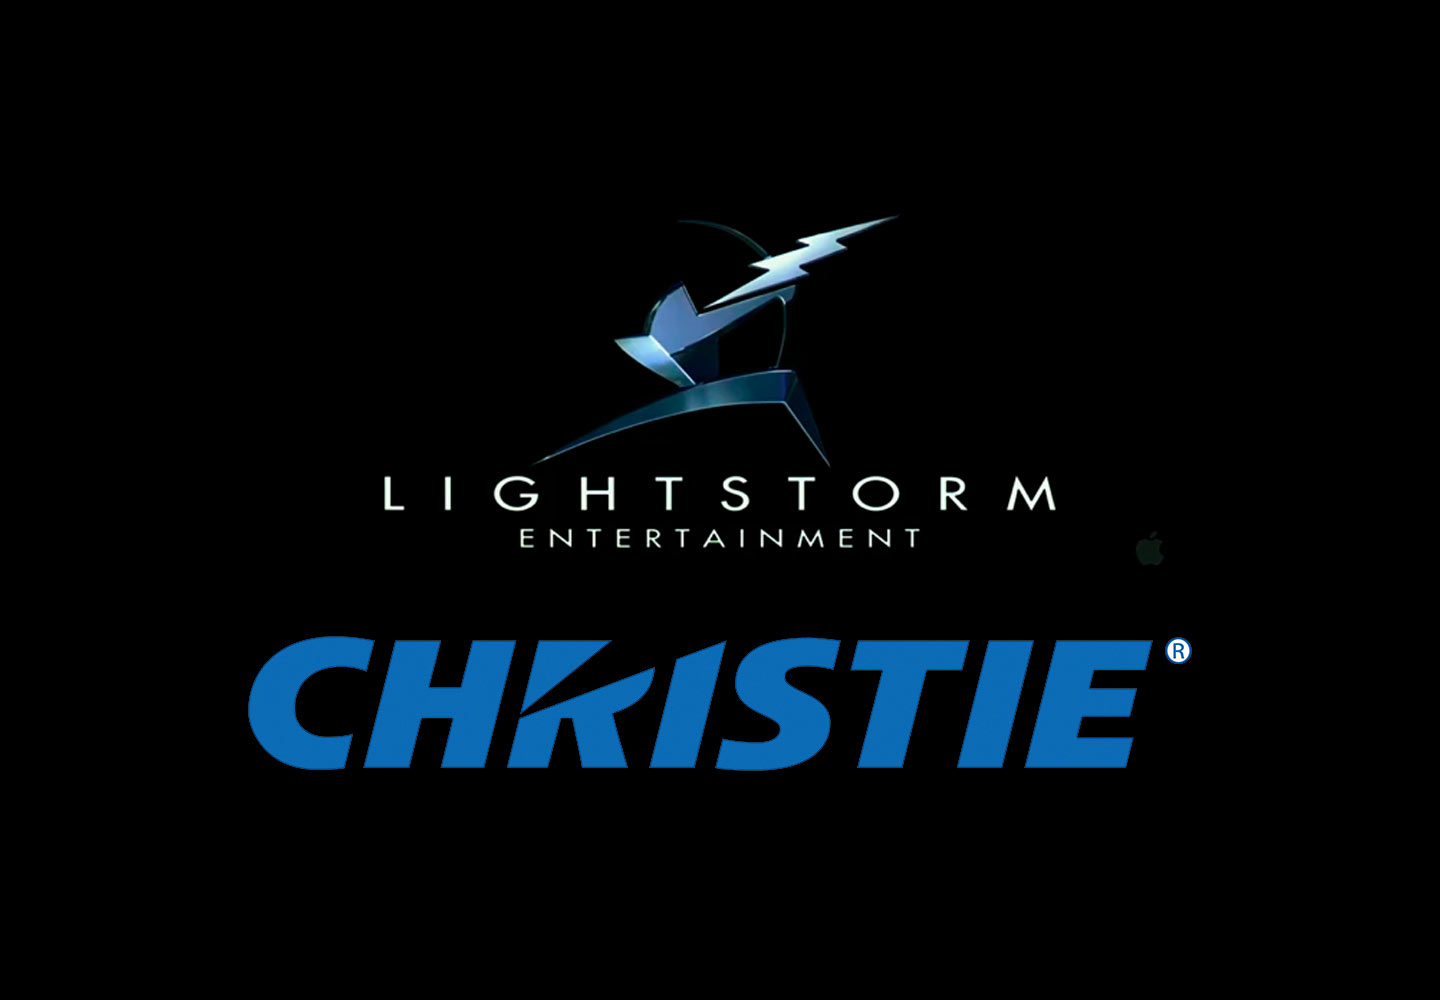 Alianza de Christie y Lightstorm Entertainment: un paso más allá en la experiencia de ir al cine